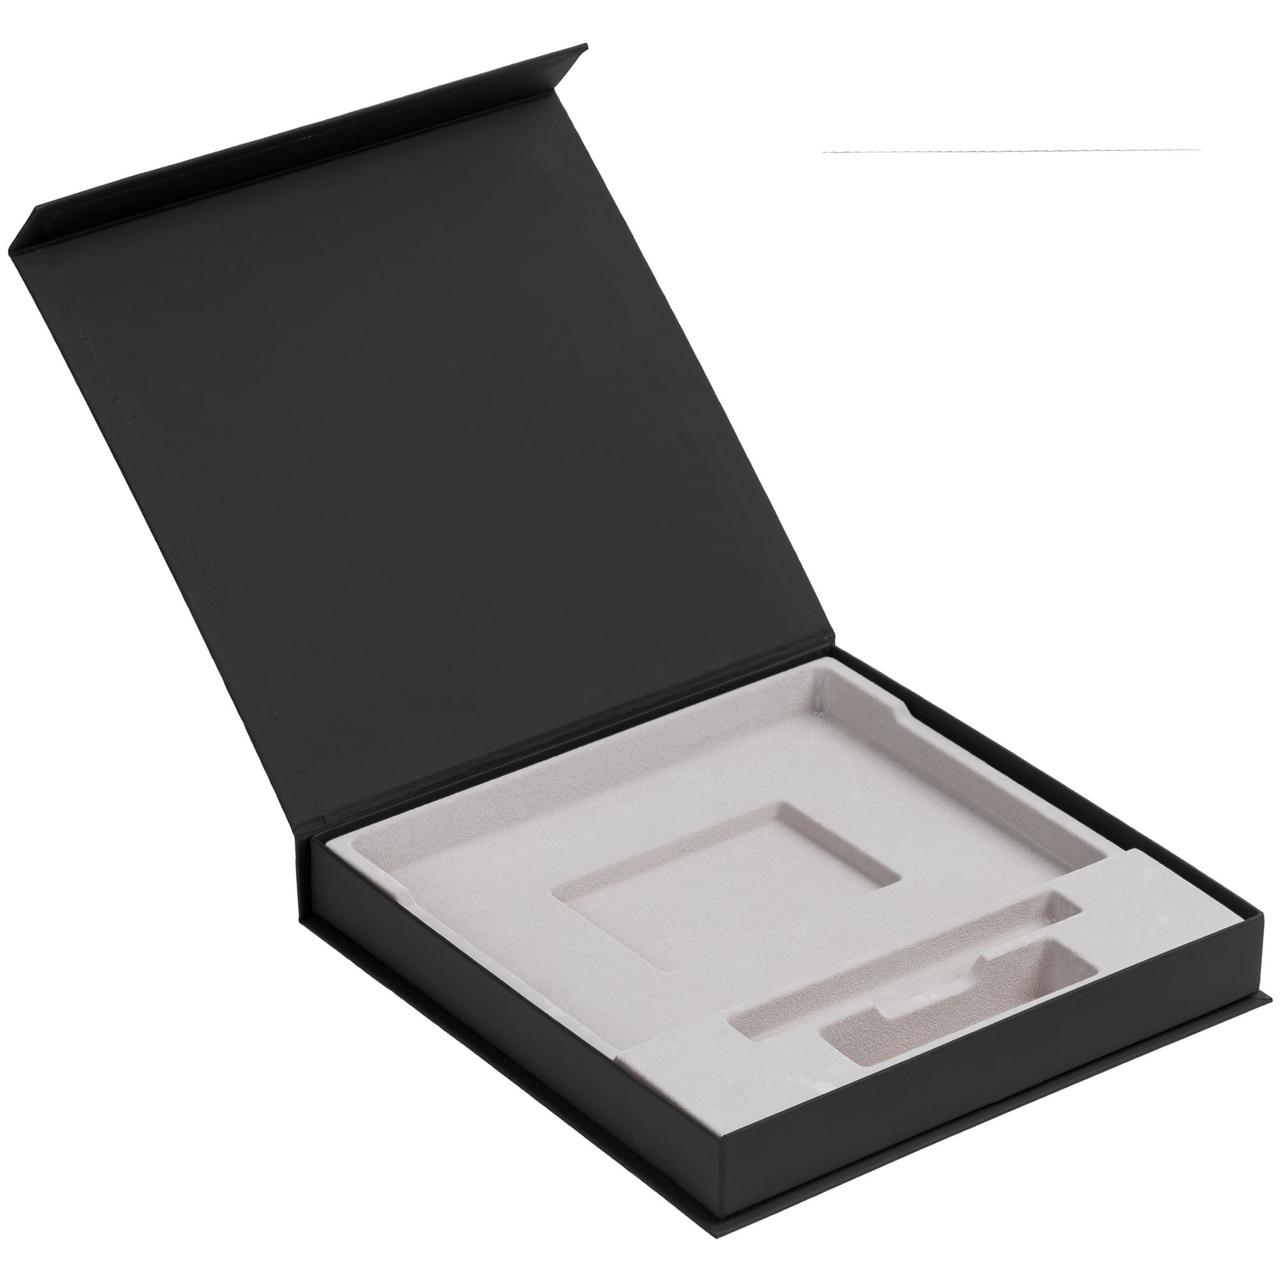 Коробка Memoria под ежедневник, аккумулятор и ручку, черная (артикул 11701.30)